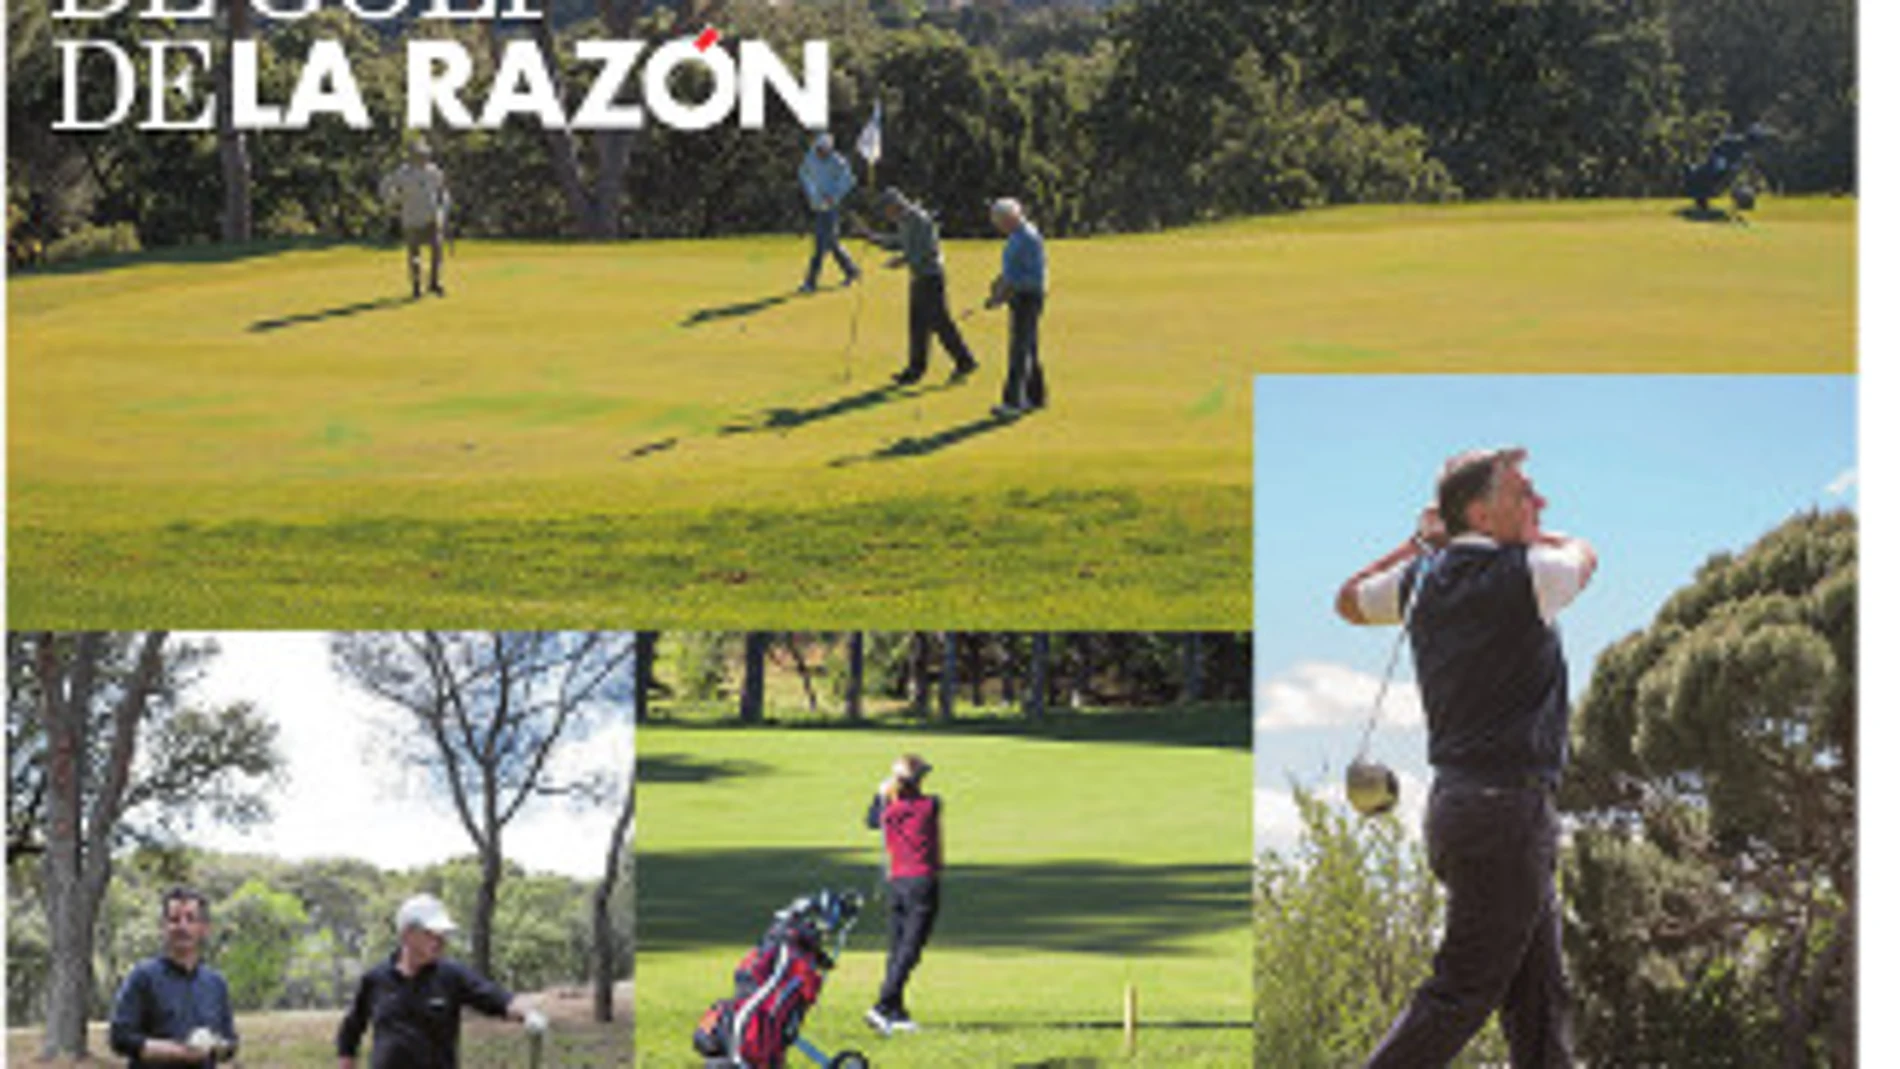 VII Torneo de Golf La Razón